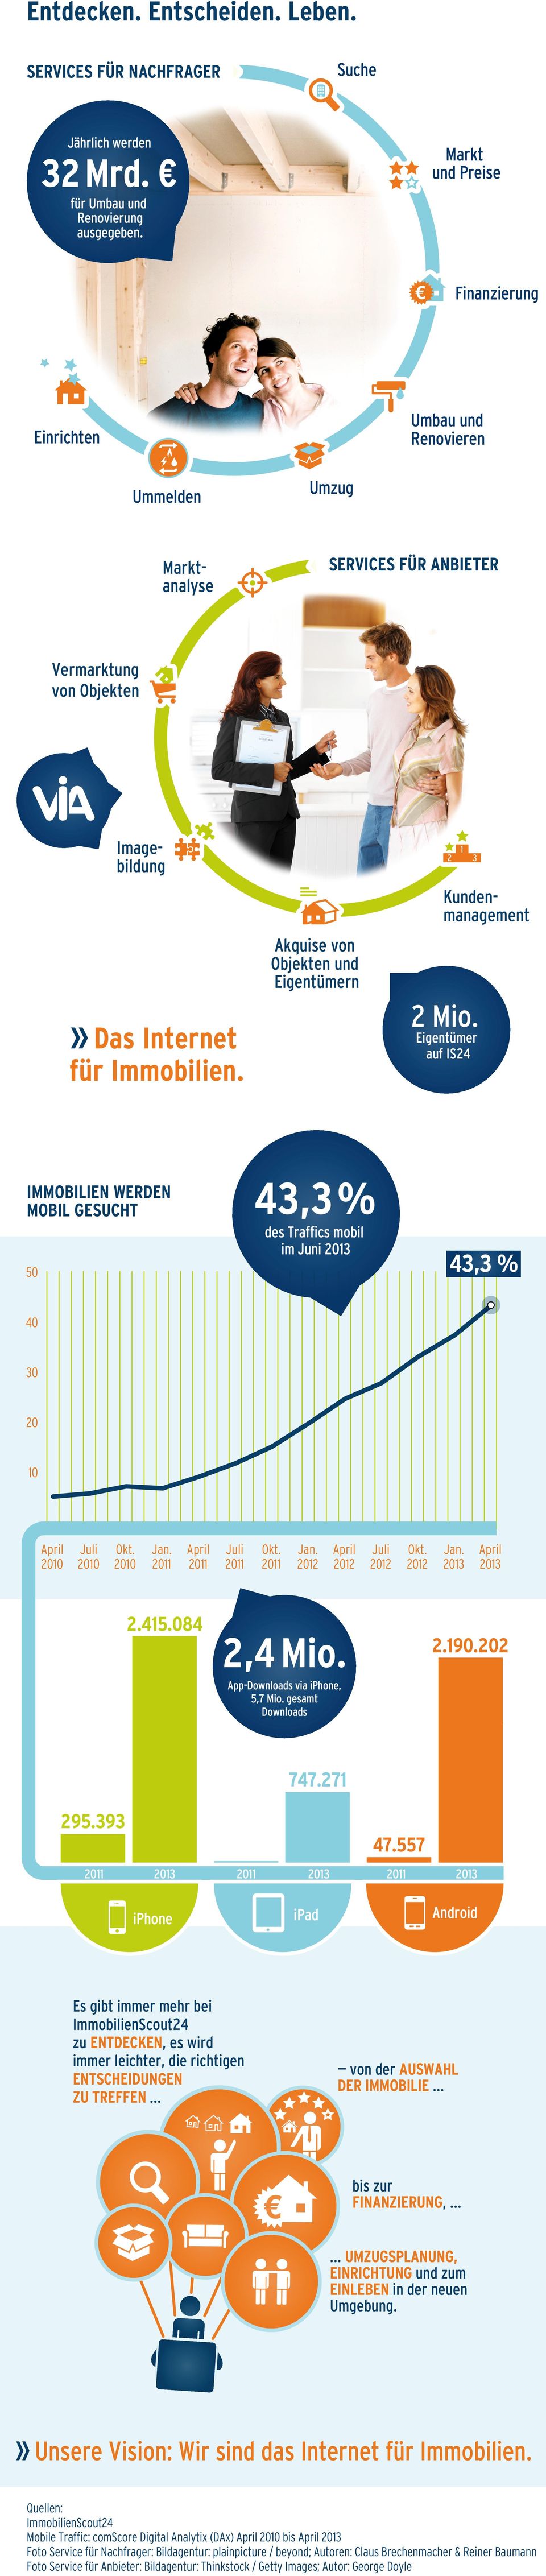 » Das Internet Eigentümer auf IS24 für Immobilien. 43,3% IMMOBILIEN WERDEN MOBIL GESUCHT des Traffics mobil im Juni 43,3 % 50 40 30 20 10 2.415.084 2,4 Mio. 2.190.